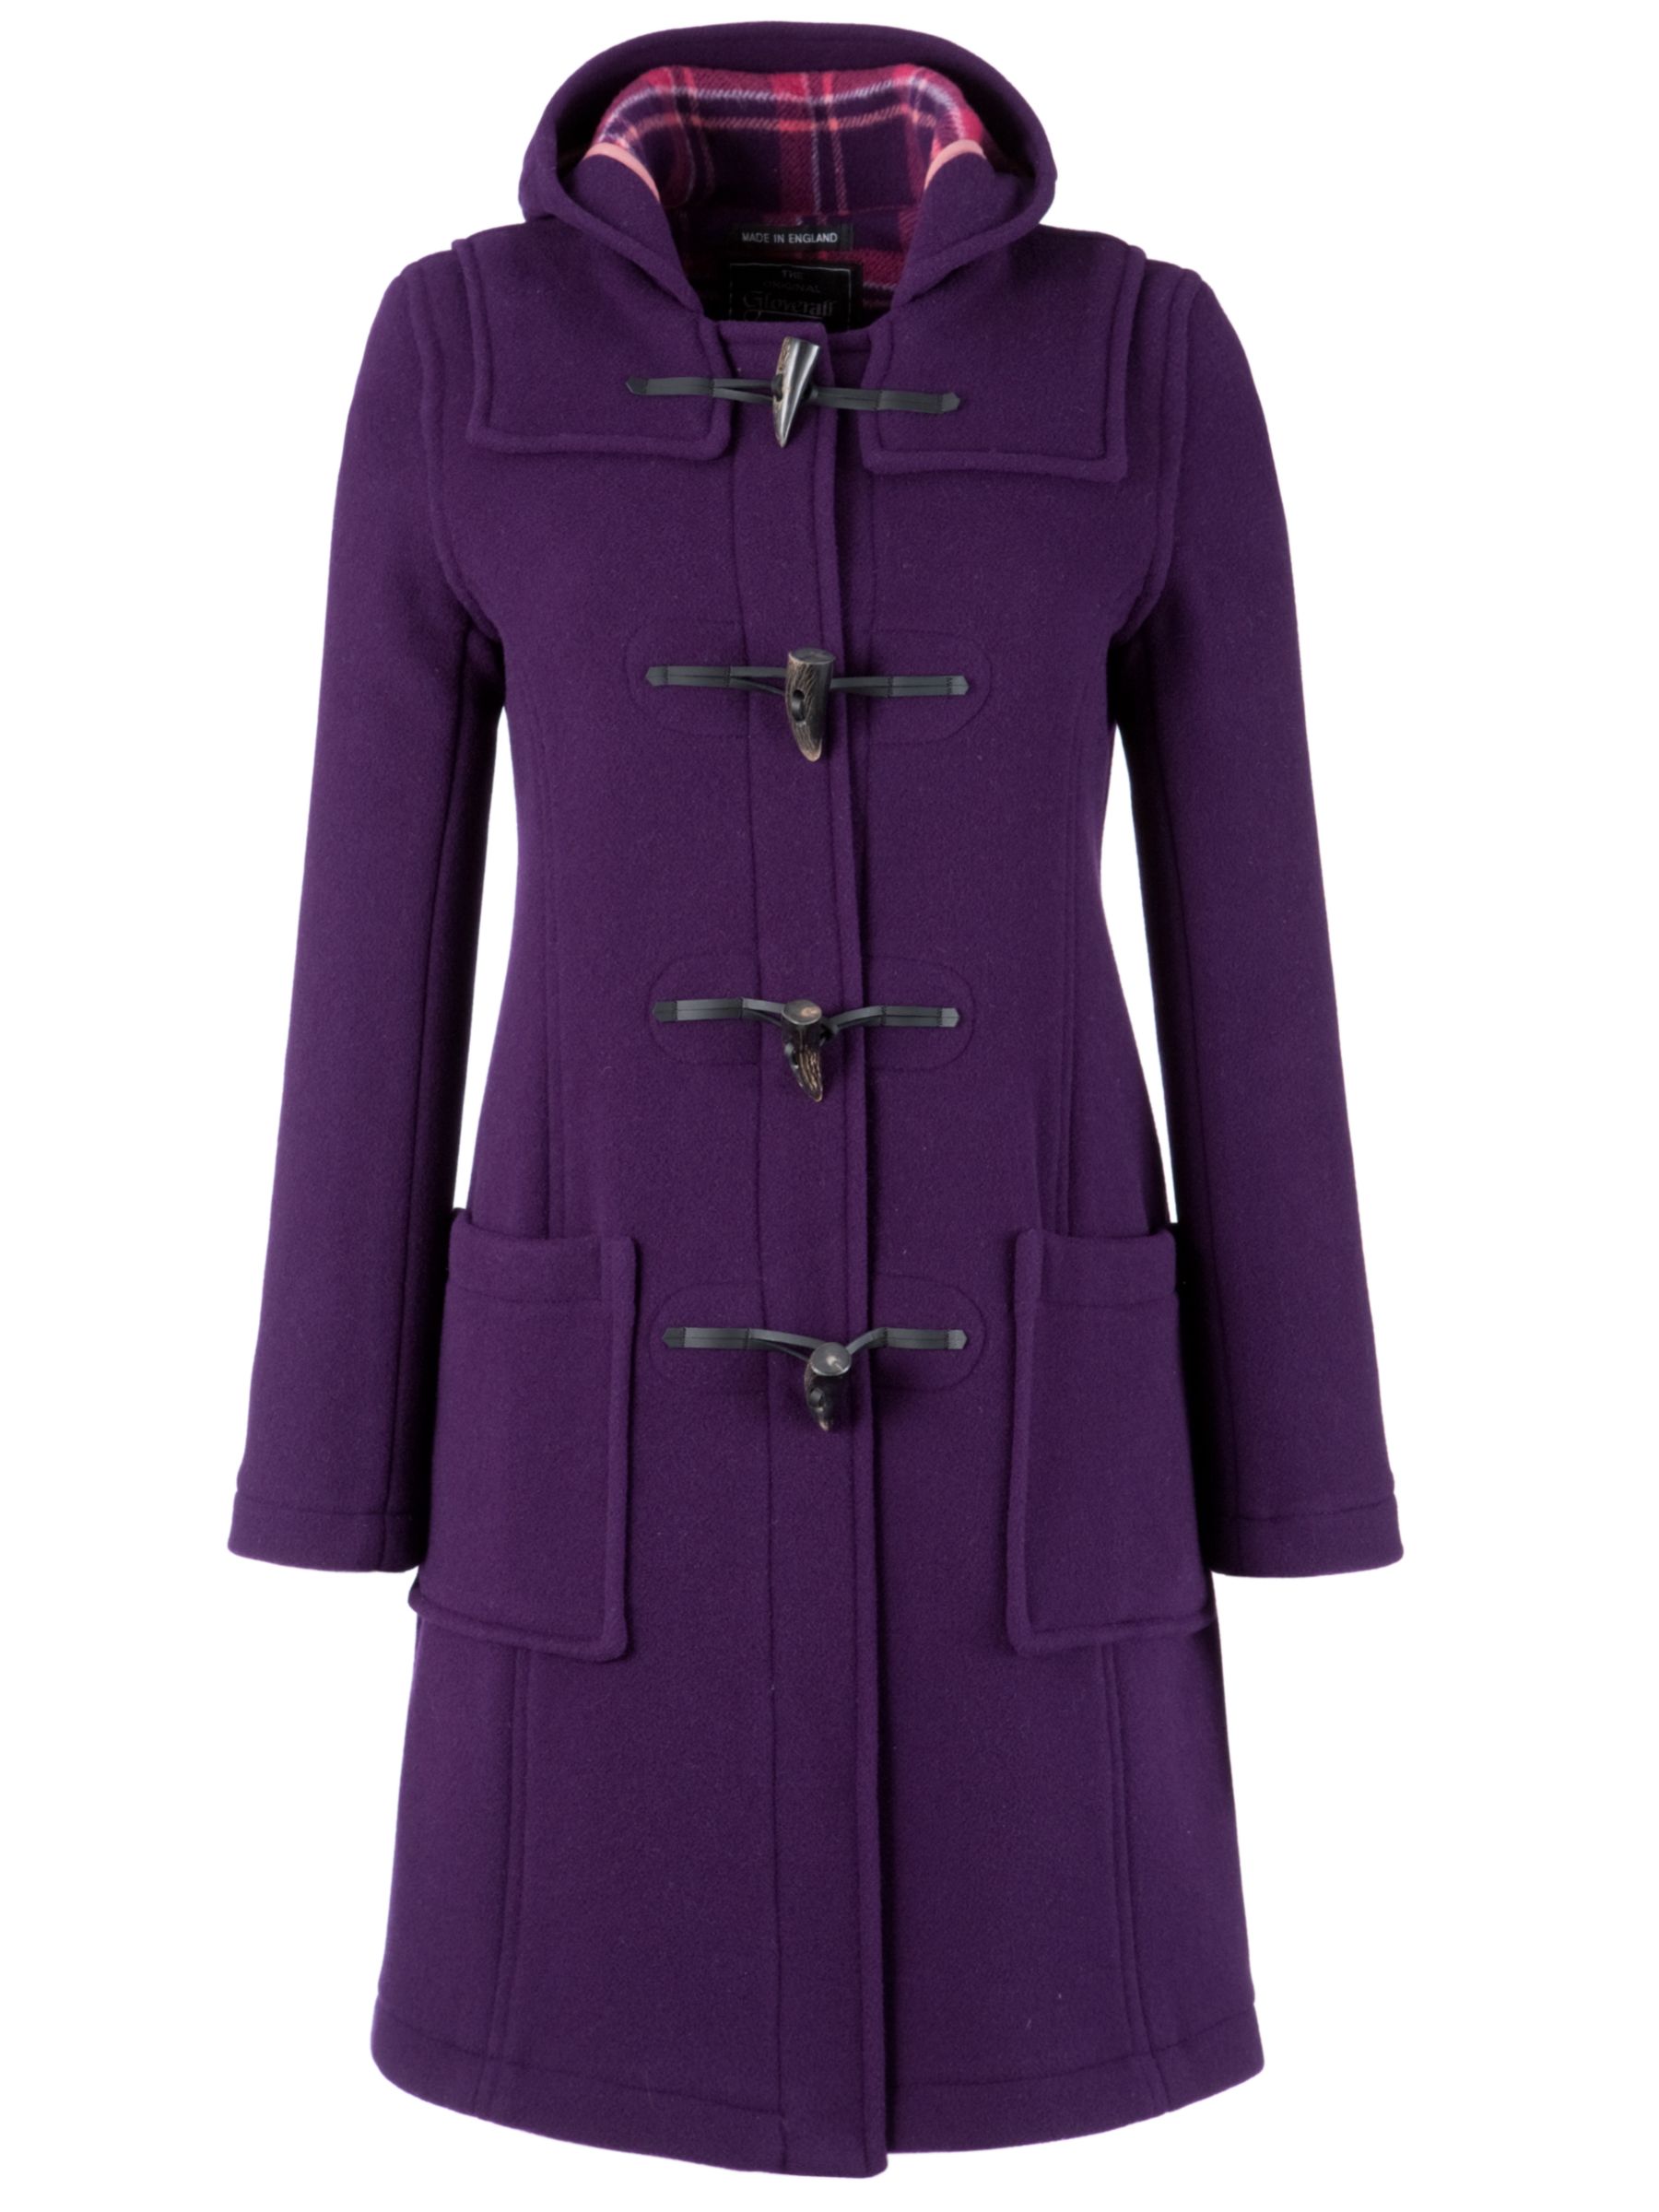 Gloverall Long Slim Fit Duffle Coat, Purple at John Lewis